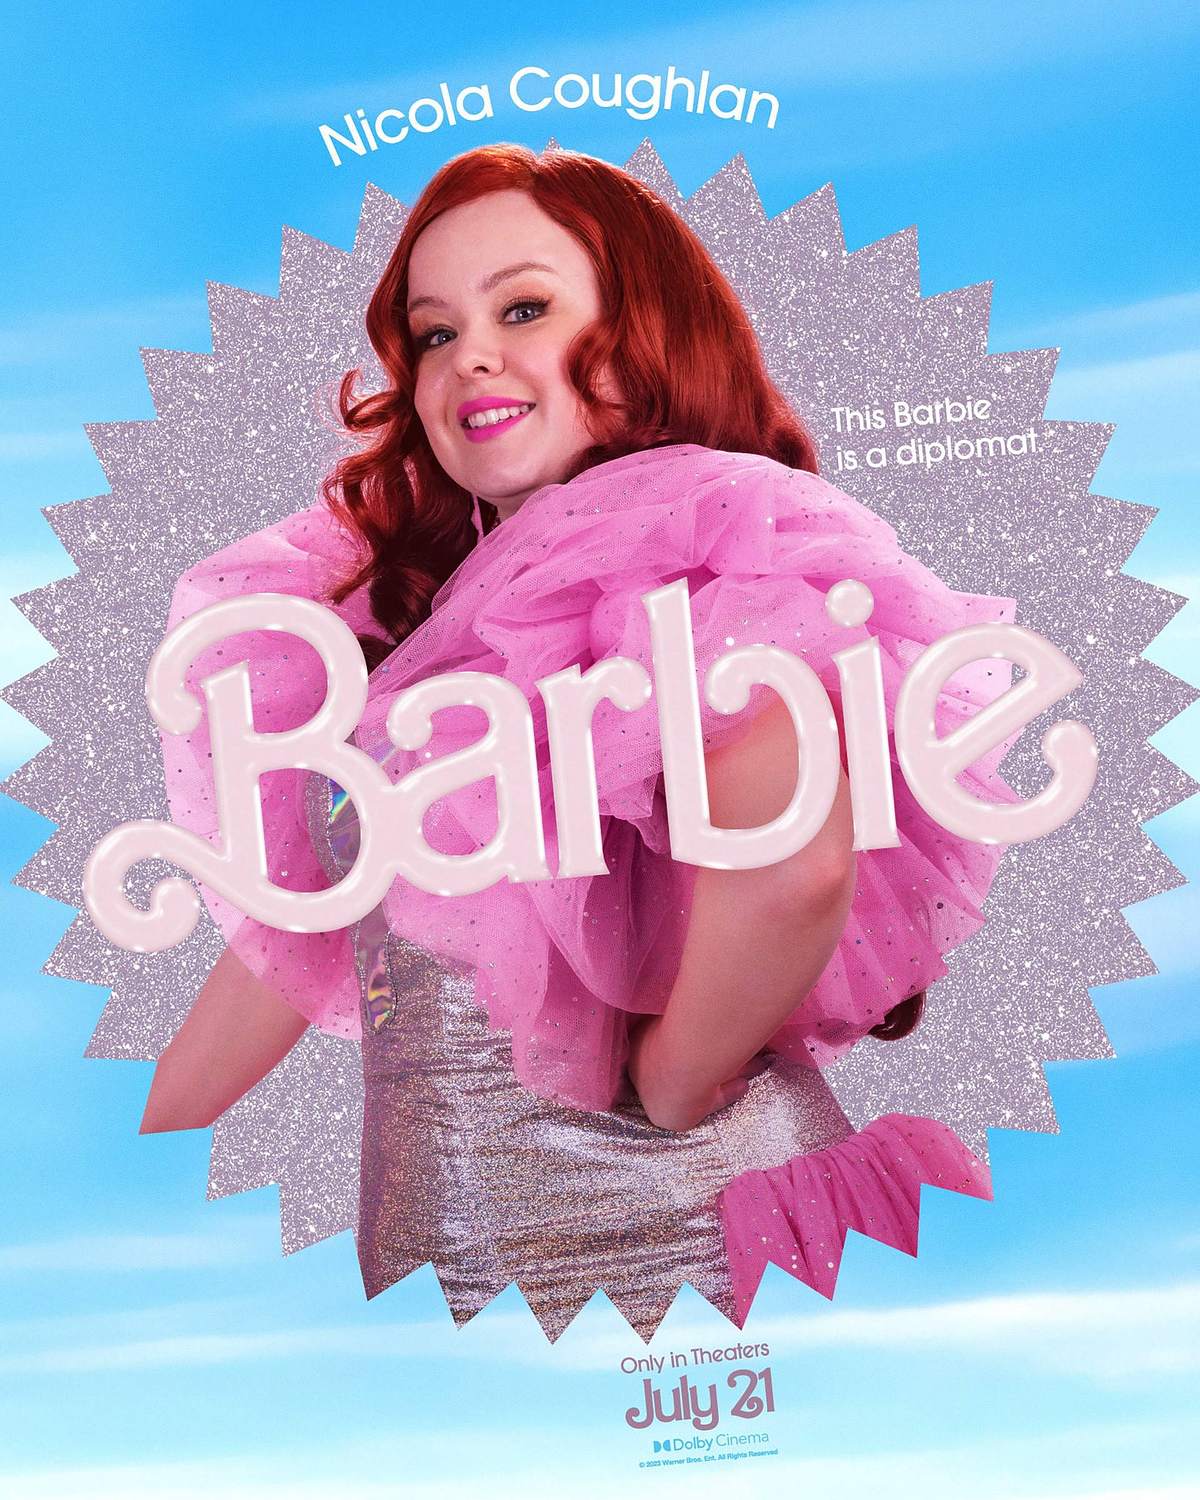 7. Nicola Coughlan spielte 2023 eine Barbie in Barbie. 